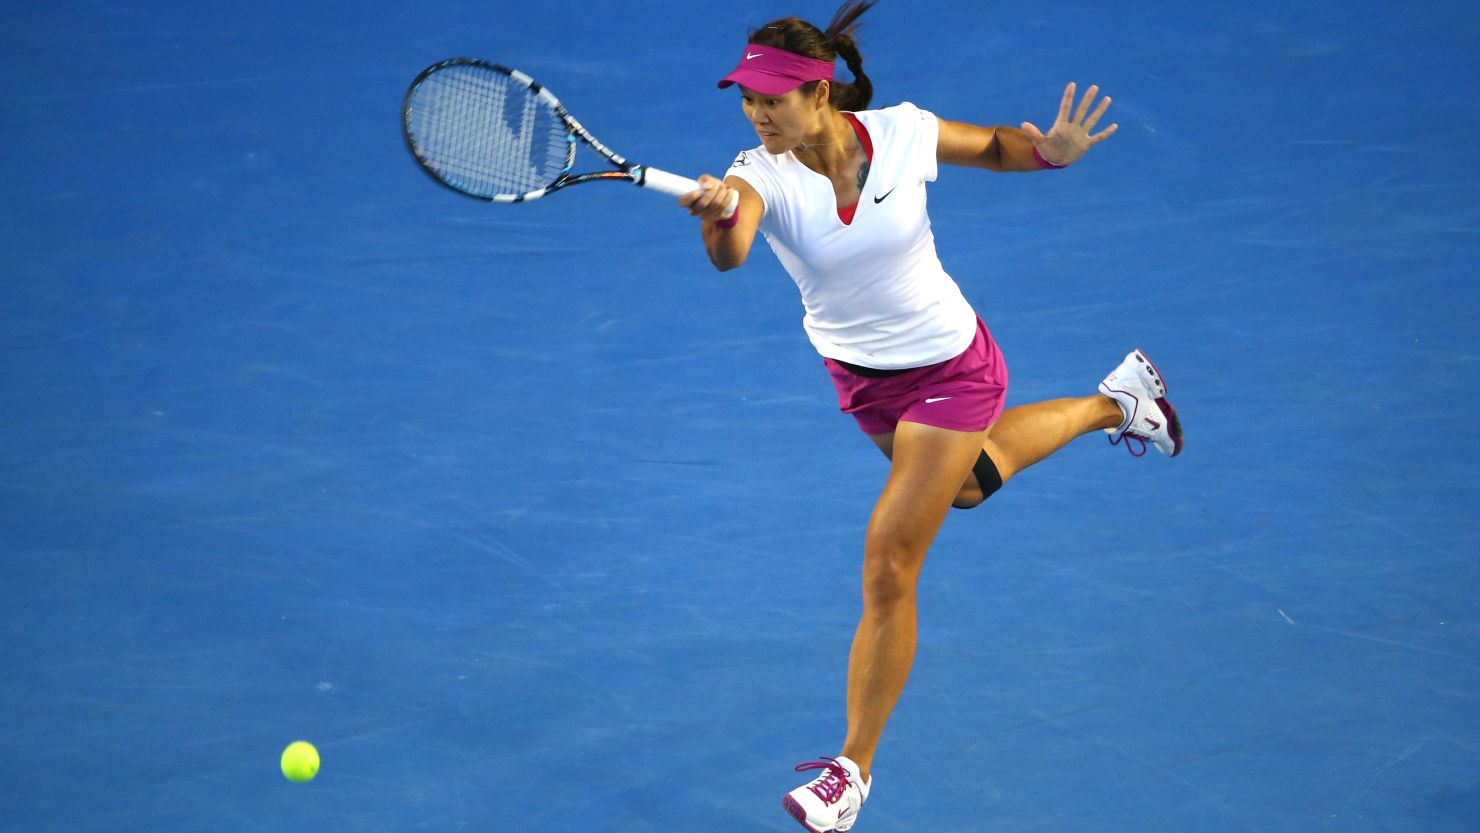 National treasure Li Na retired from tennis in 2014